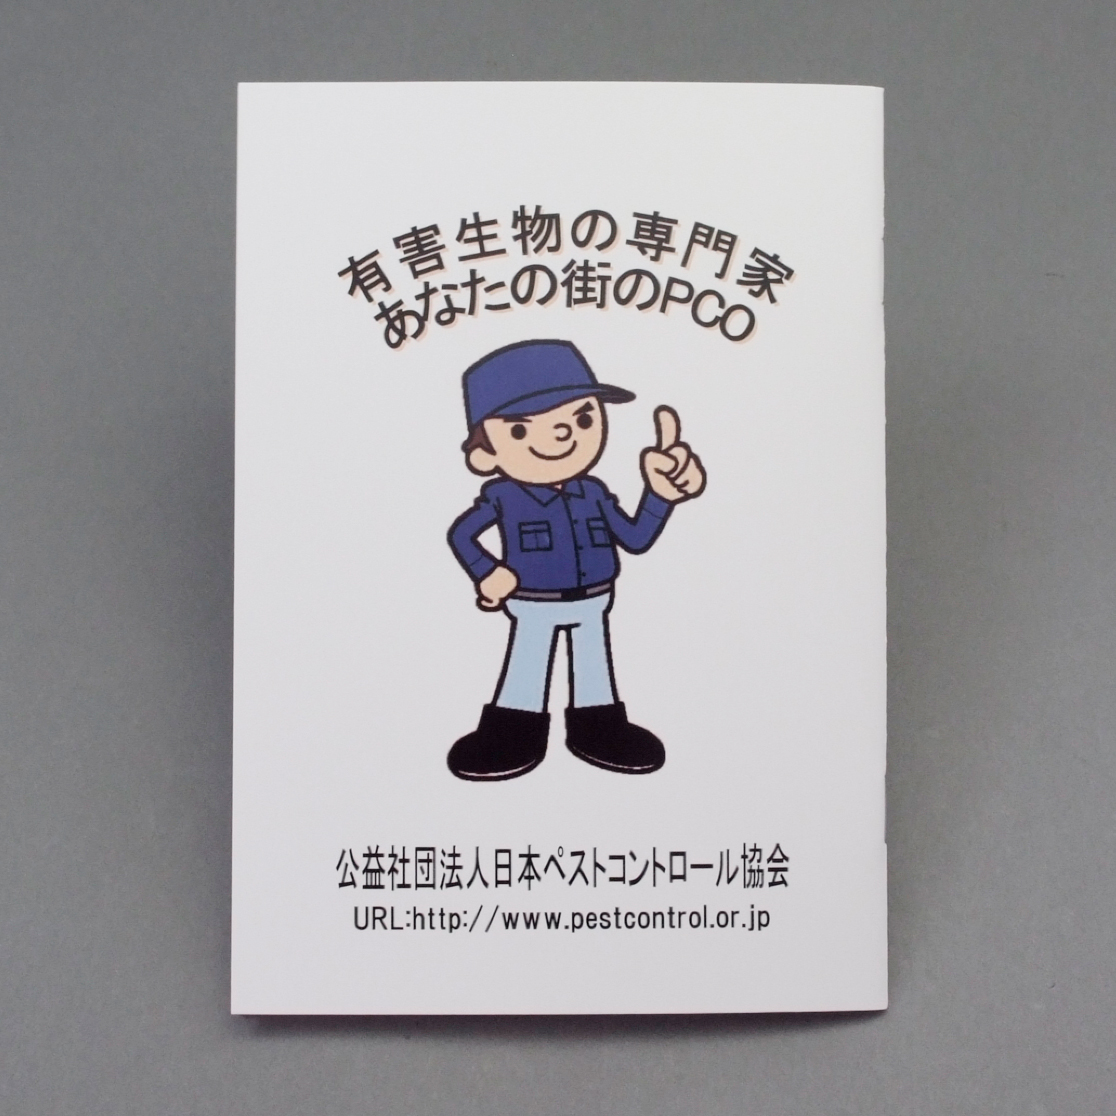 「（公社）日本ペストコントロール協会 様」製作のオリジナルノート